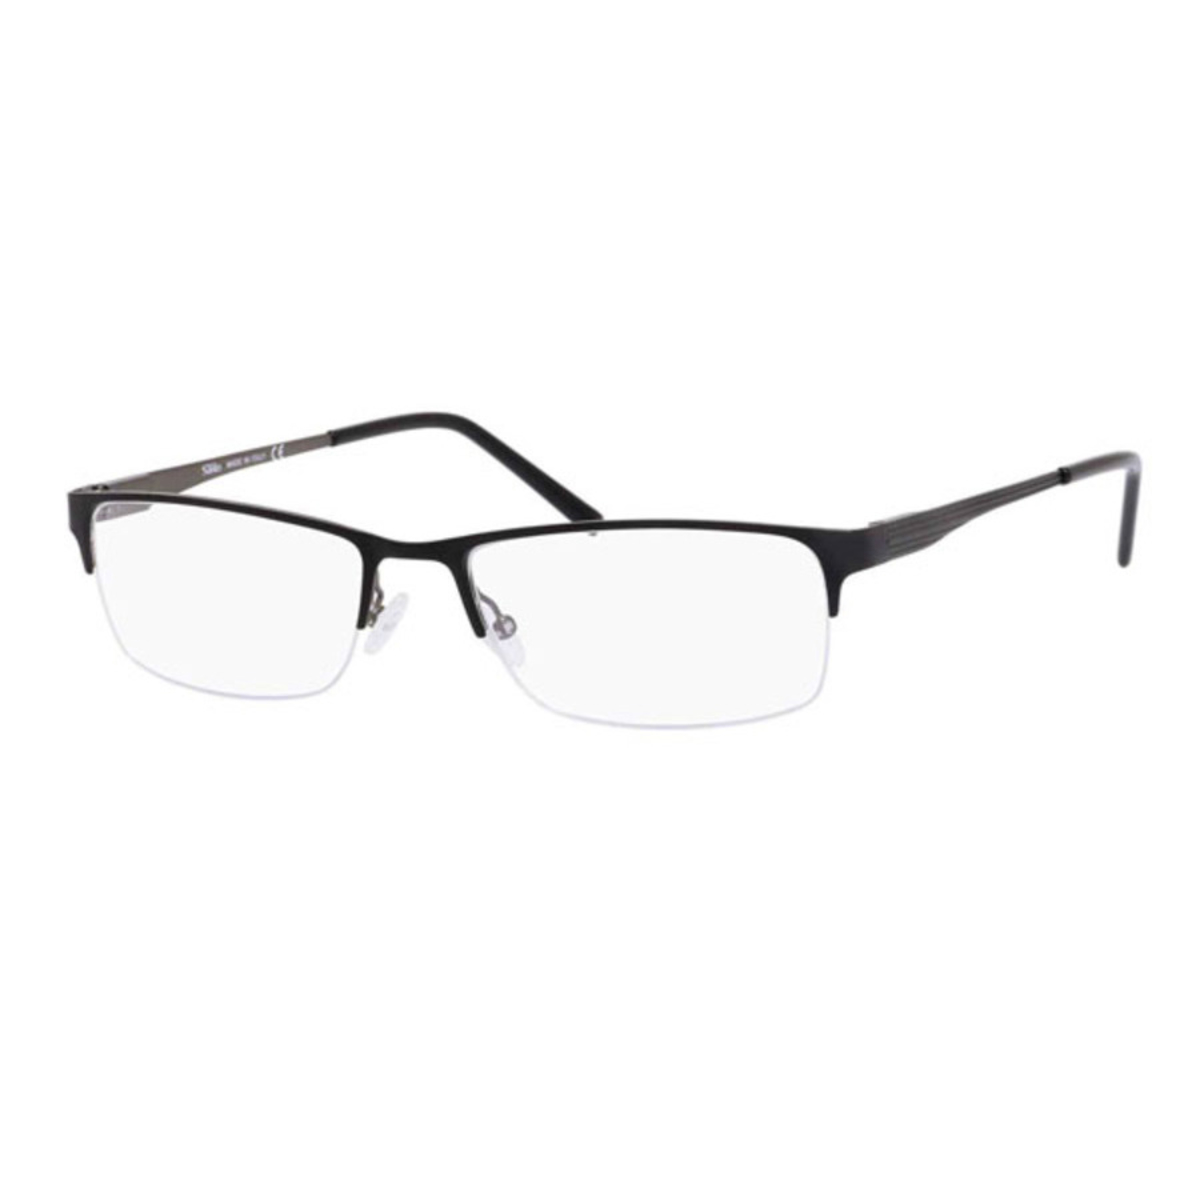 Elasta Mens Black Rectangular Eyeglass Frames 30990jvw0056